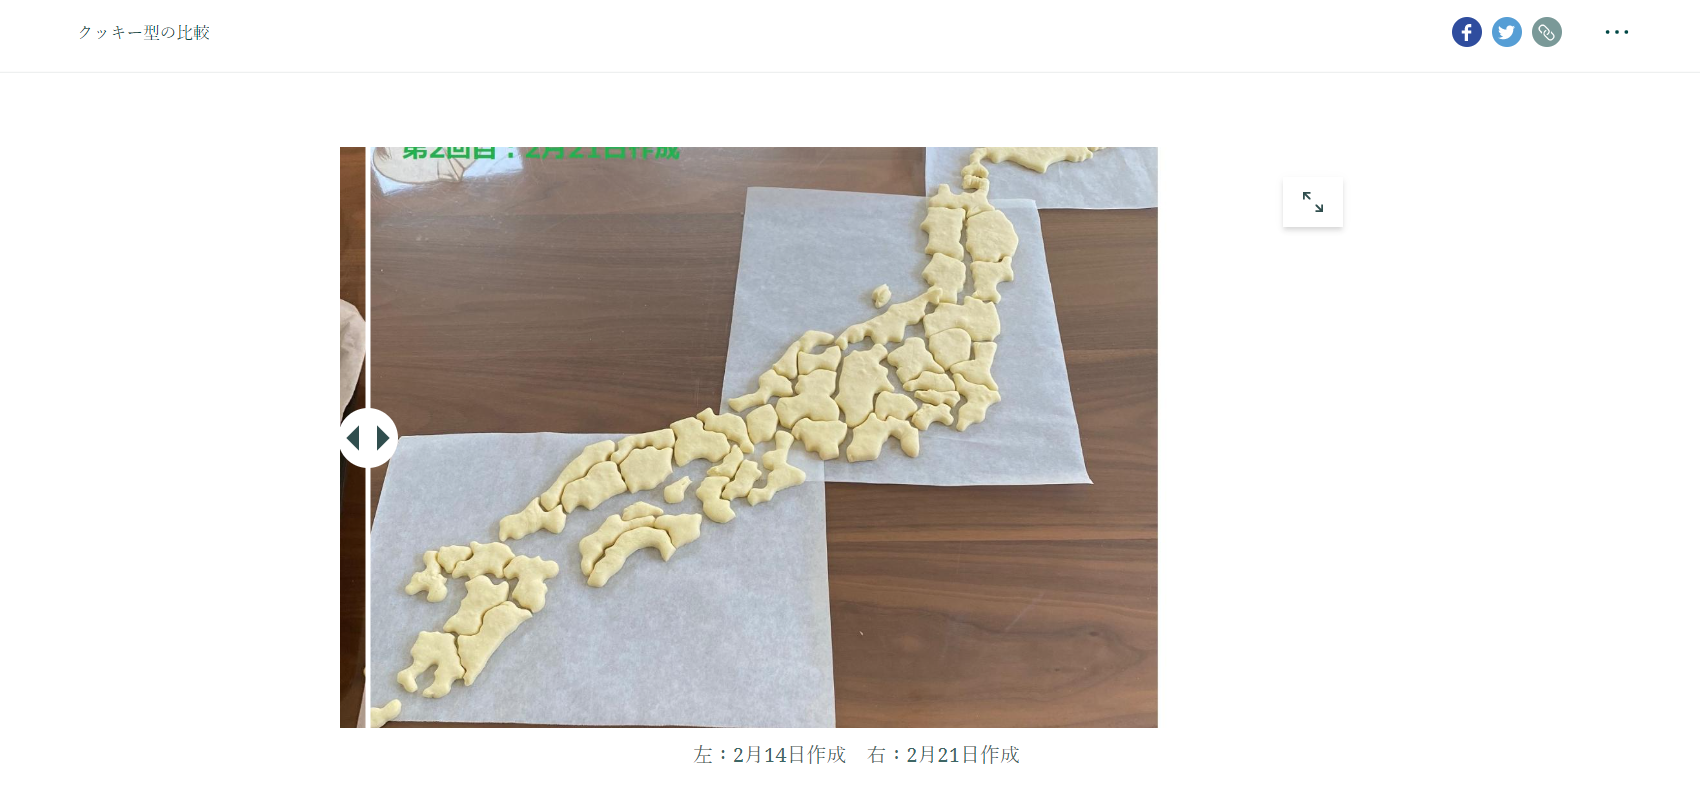 クッキーで日本地図を表現